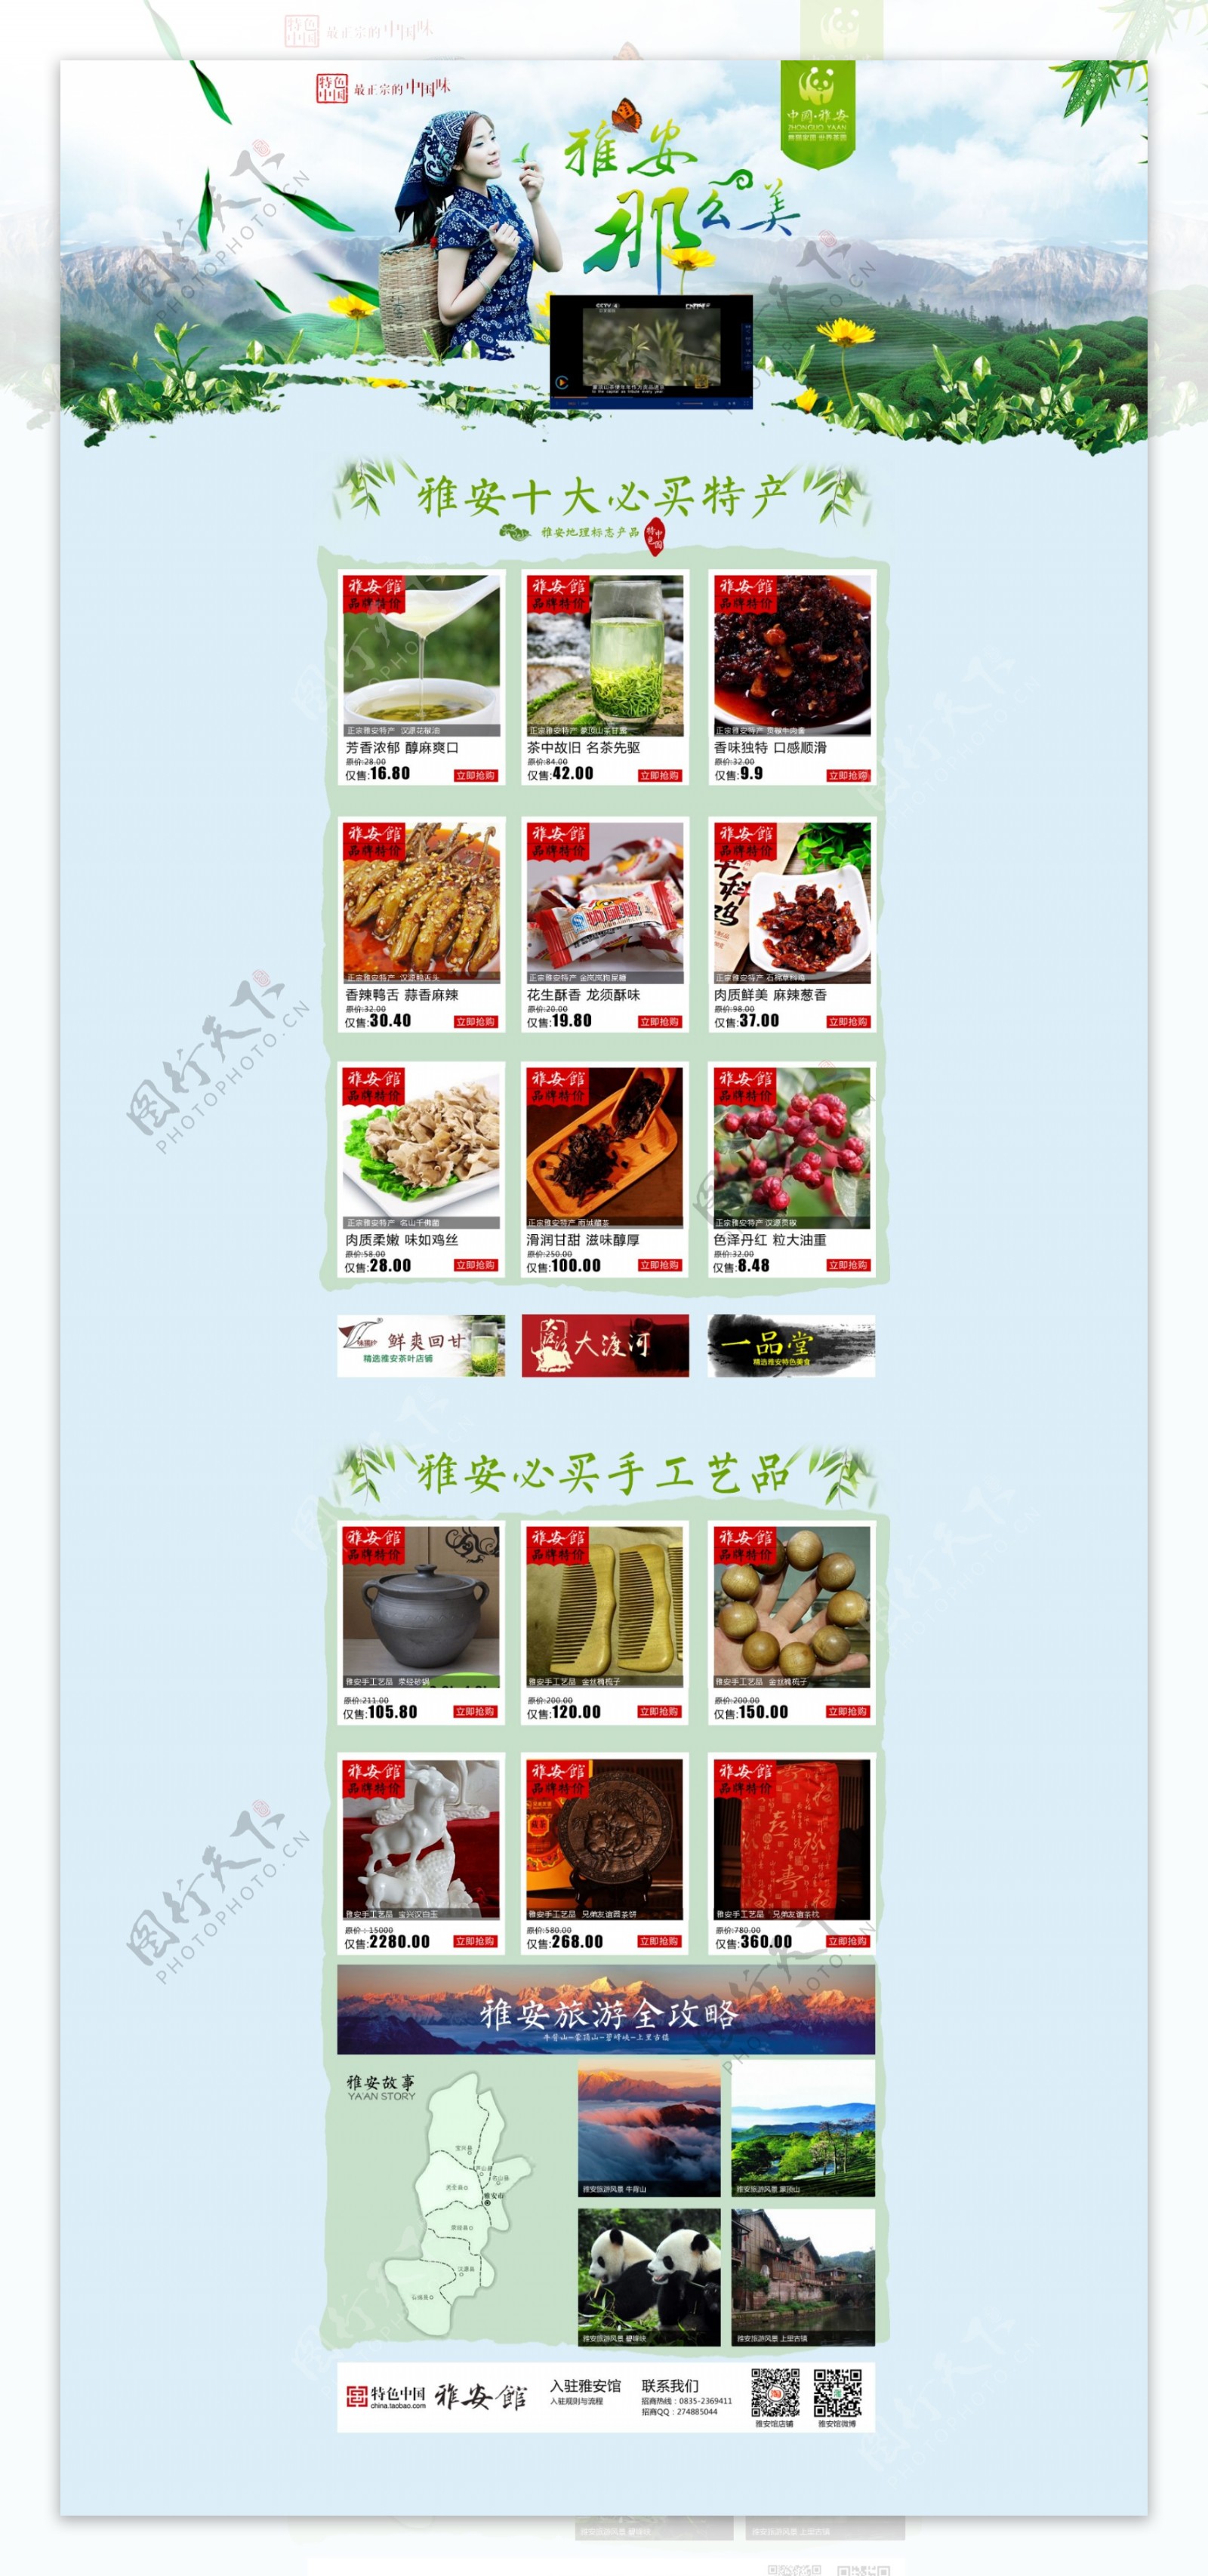 淘宝特色中国雅安馆活动页面设计